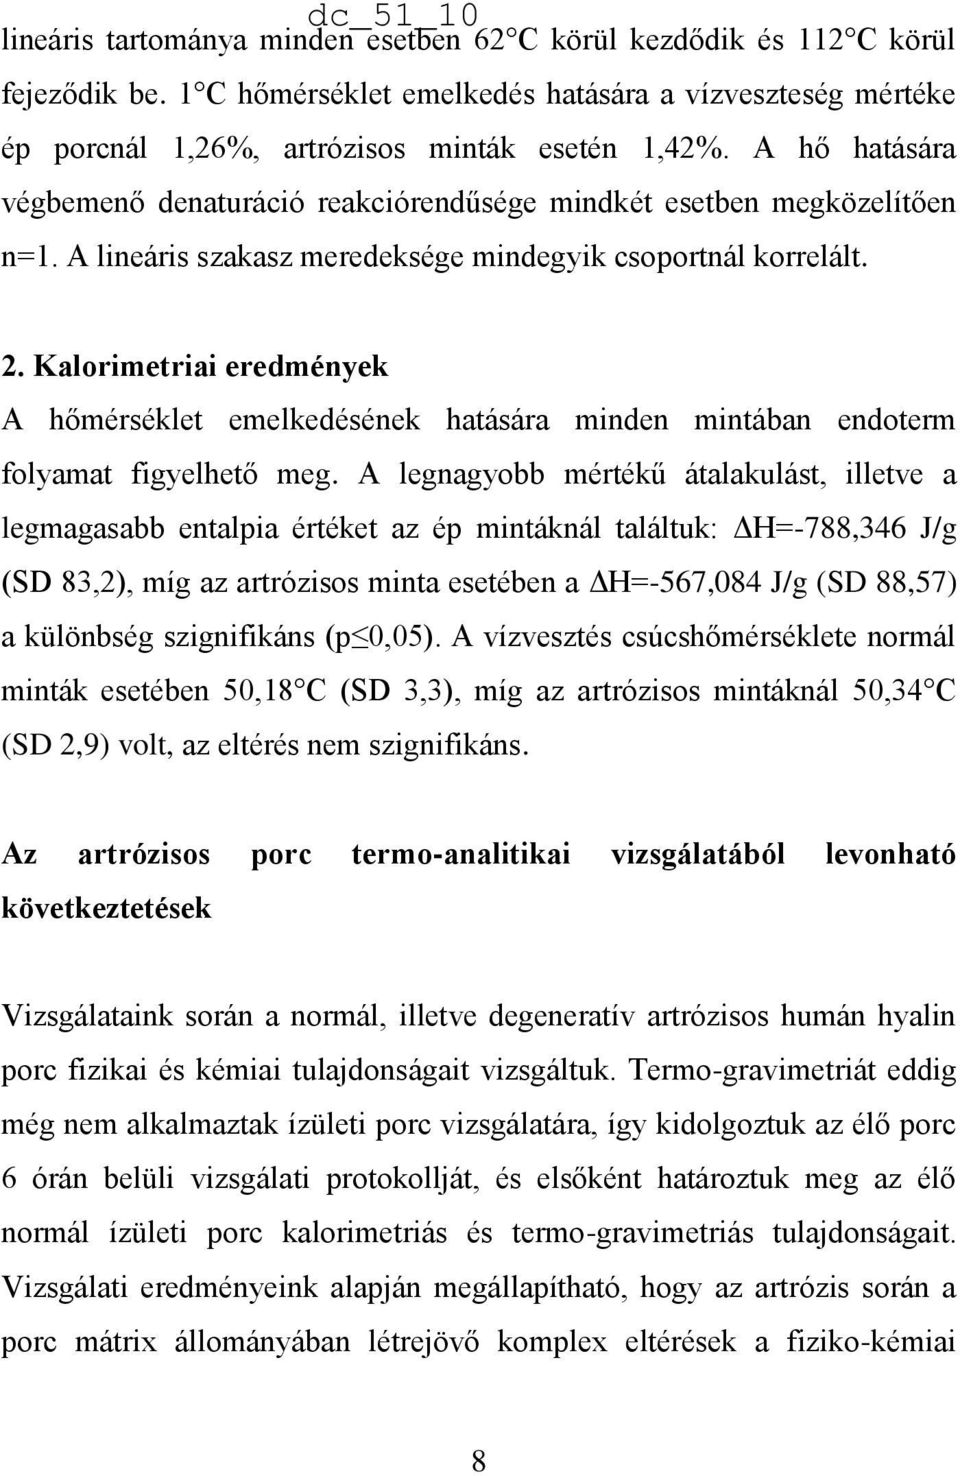 foldesjozsietterme.hu :: főoldal - Az artrózis kezelésében a közelmúltban elért eredmények